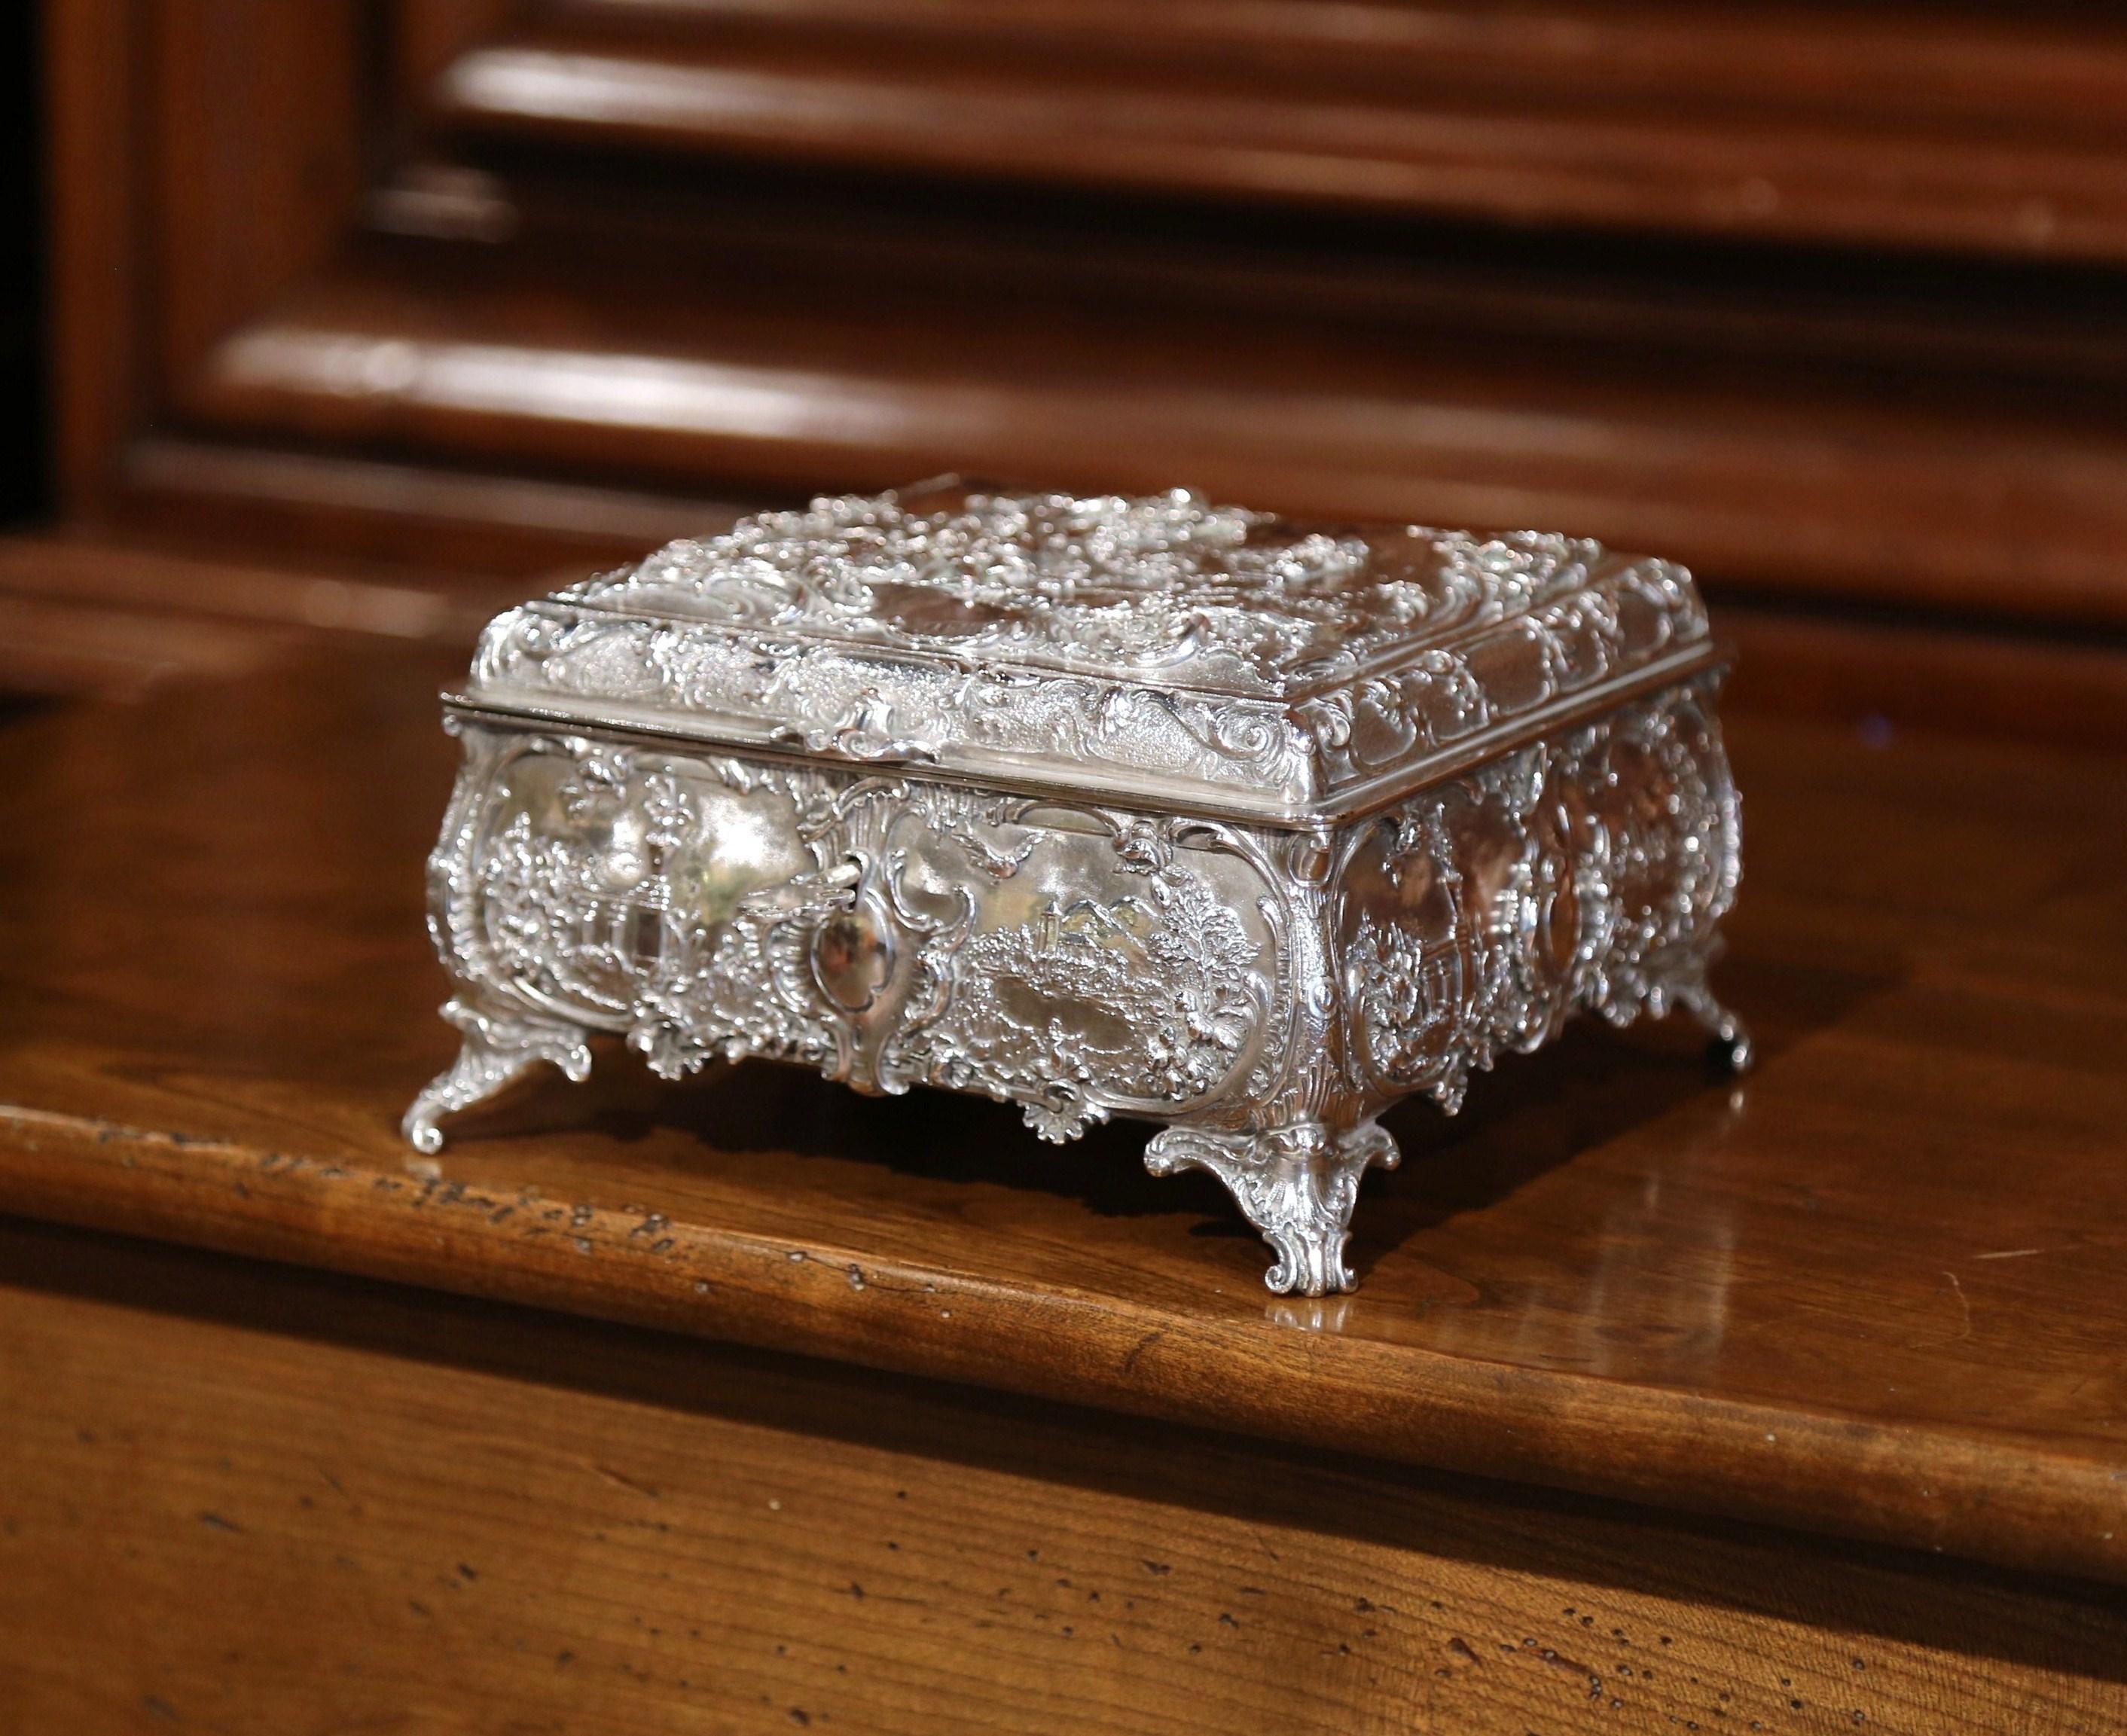 casket jewelry box